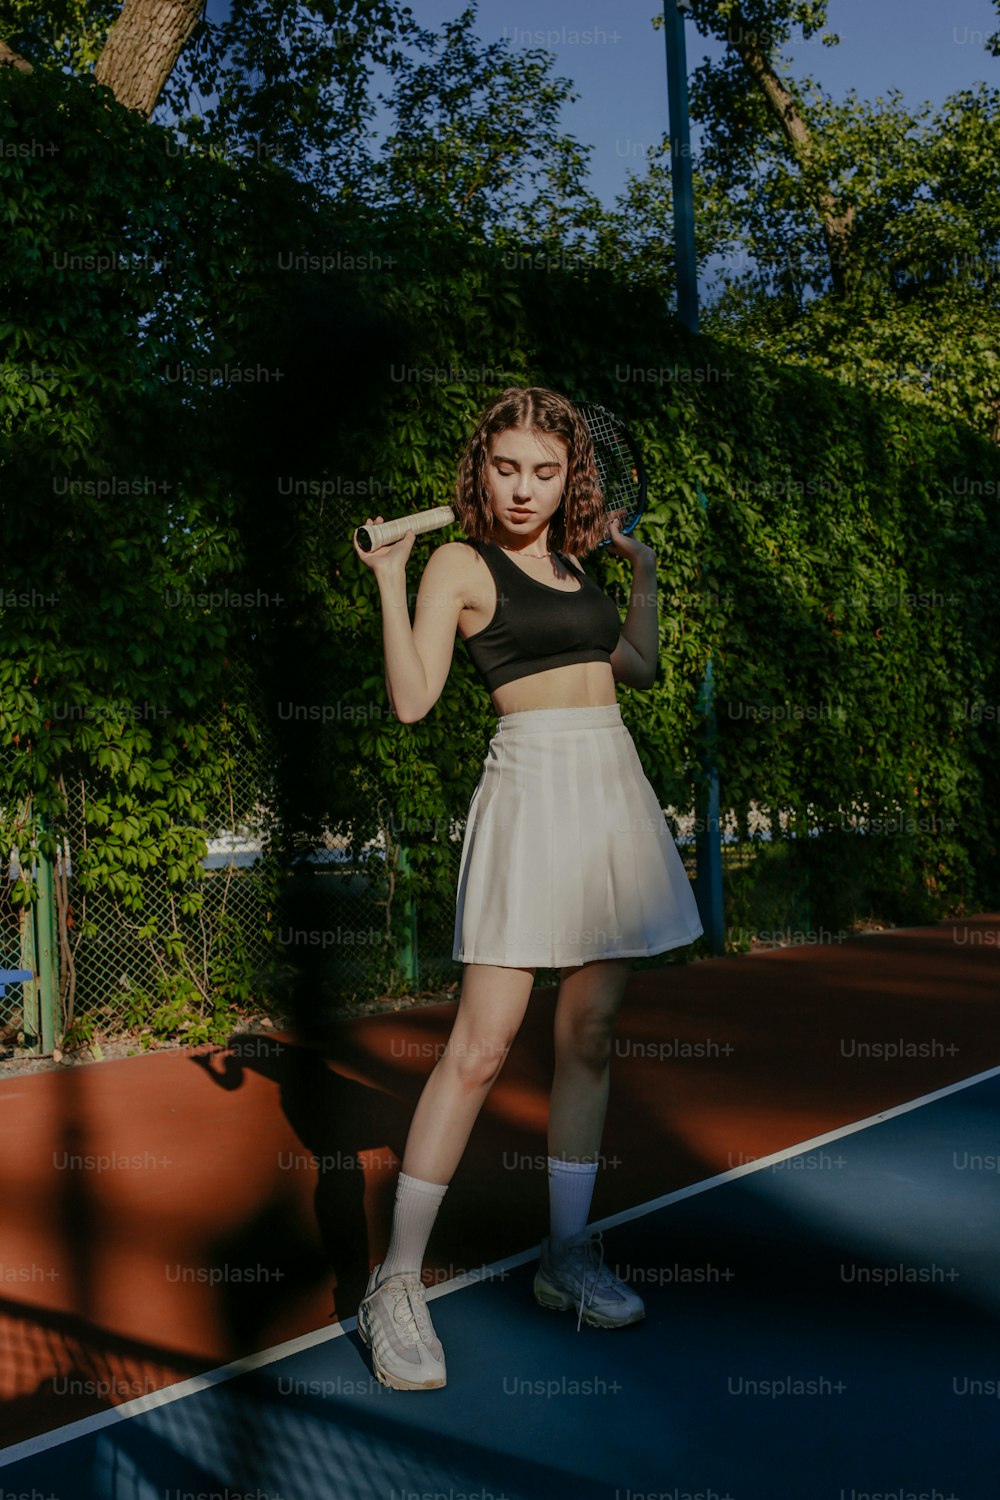 Una mujer parada en una cancha de tenis sosteniendo una raqueta